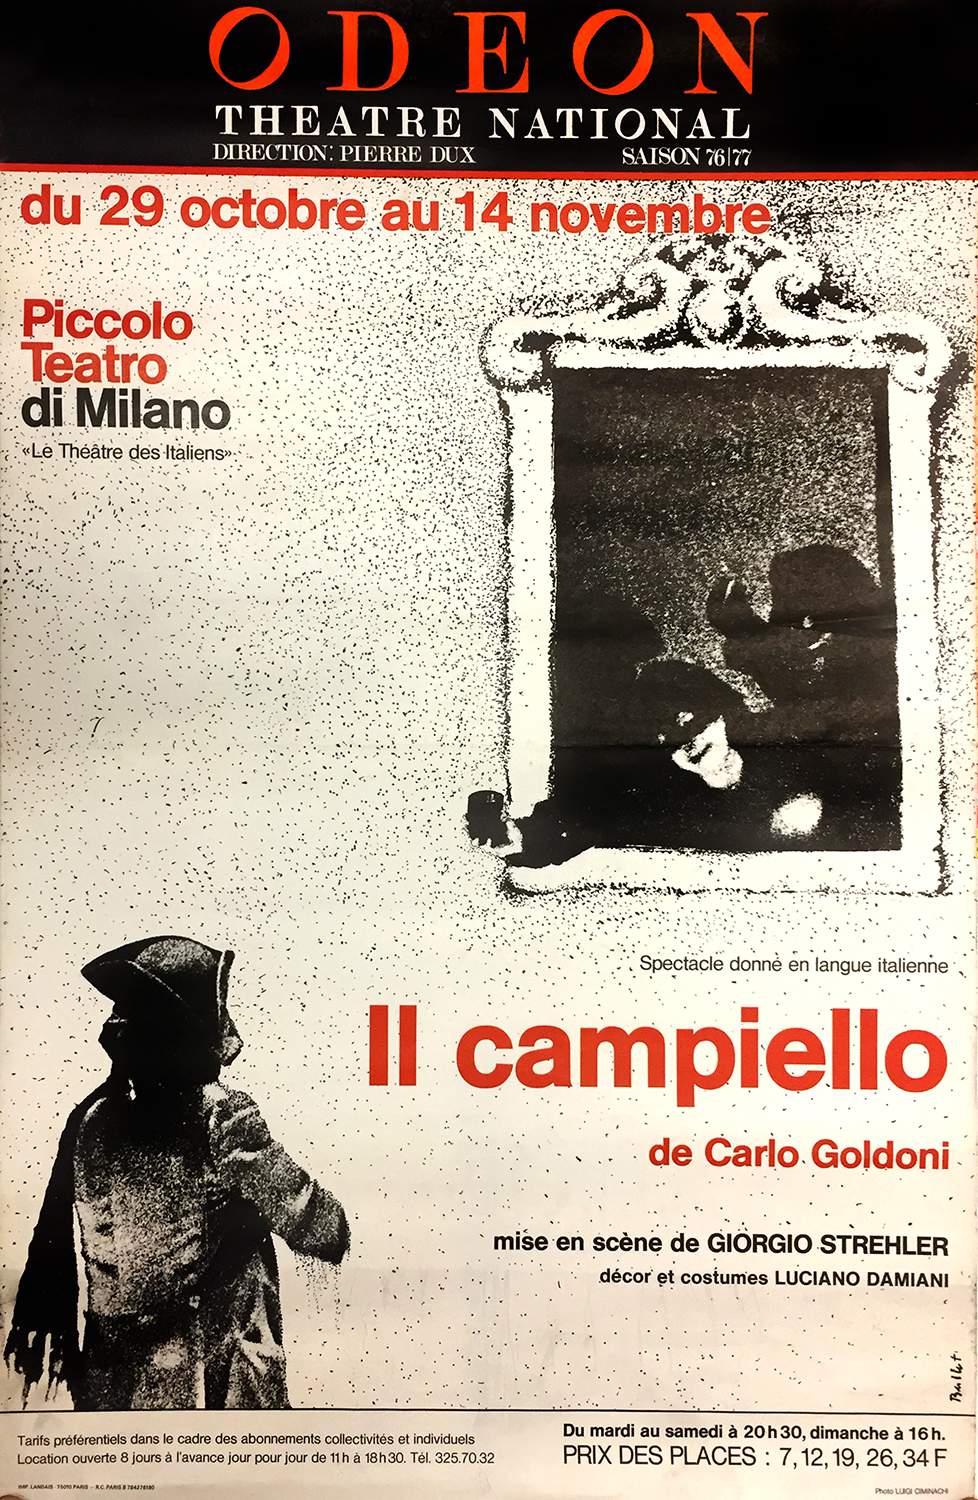 Parigi, seconda stagione di repliche all’Odéon, ottobre 1976 - Archivio Piccolo Teatro di Milano